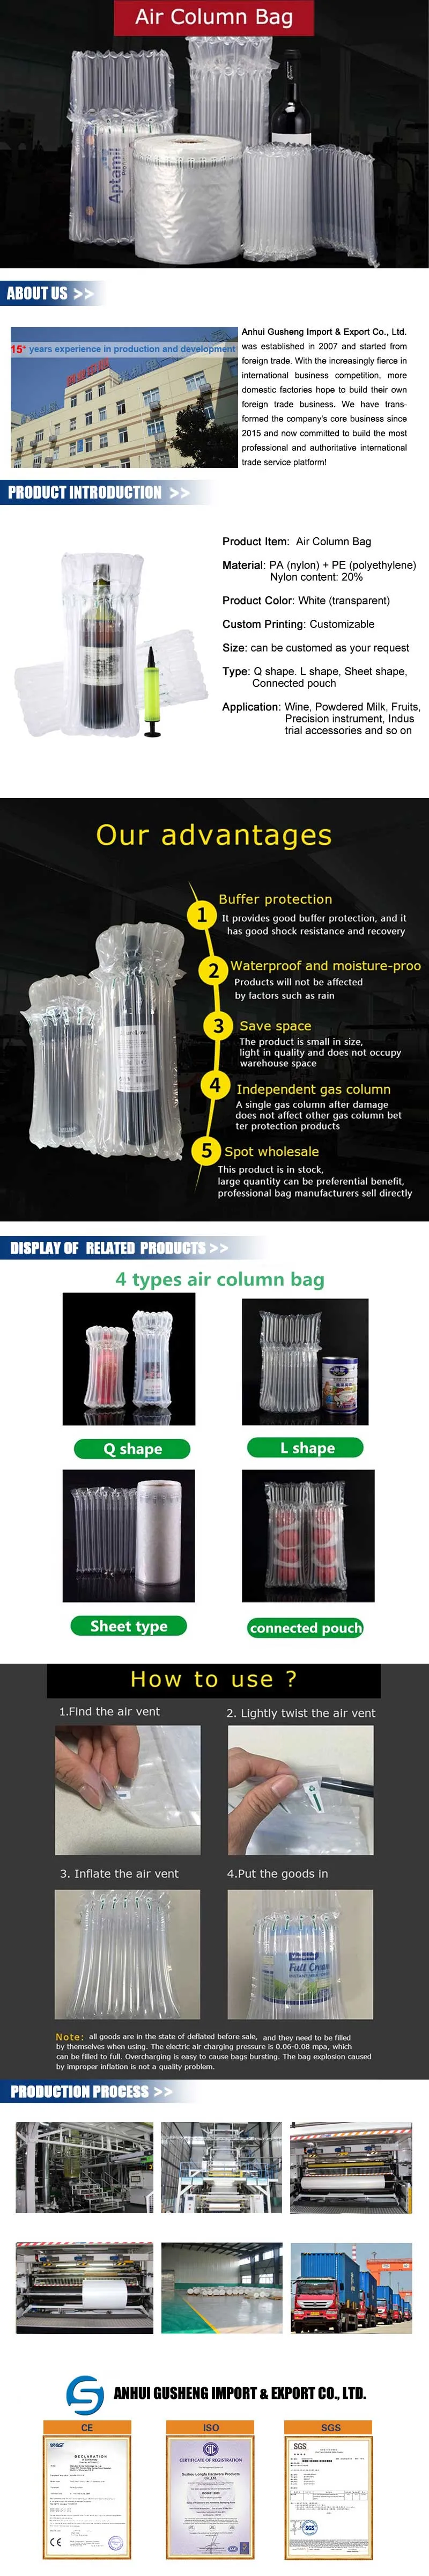 Efficient Lightbulb Column Air Cushion Bag